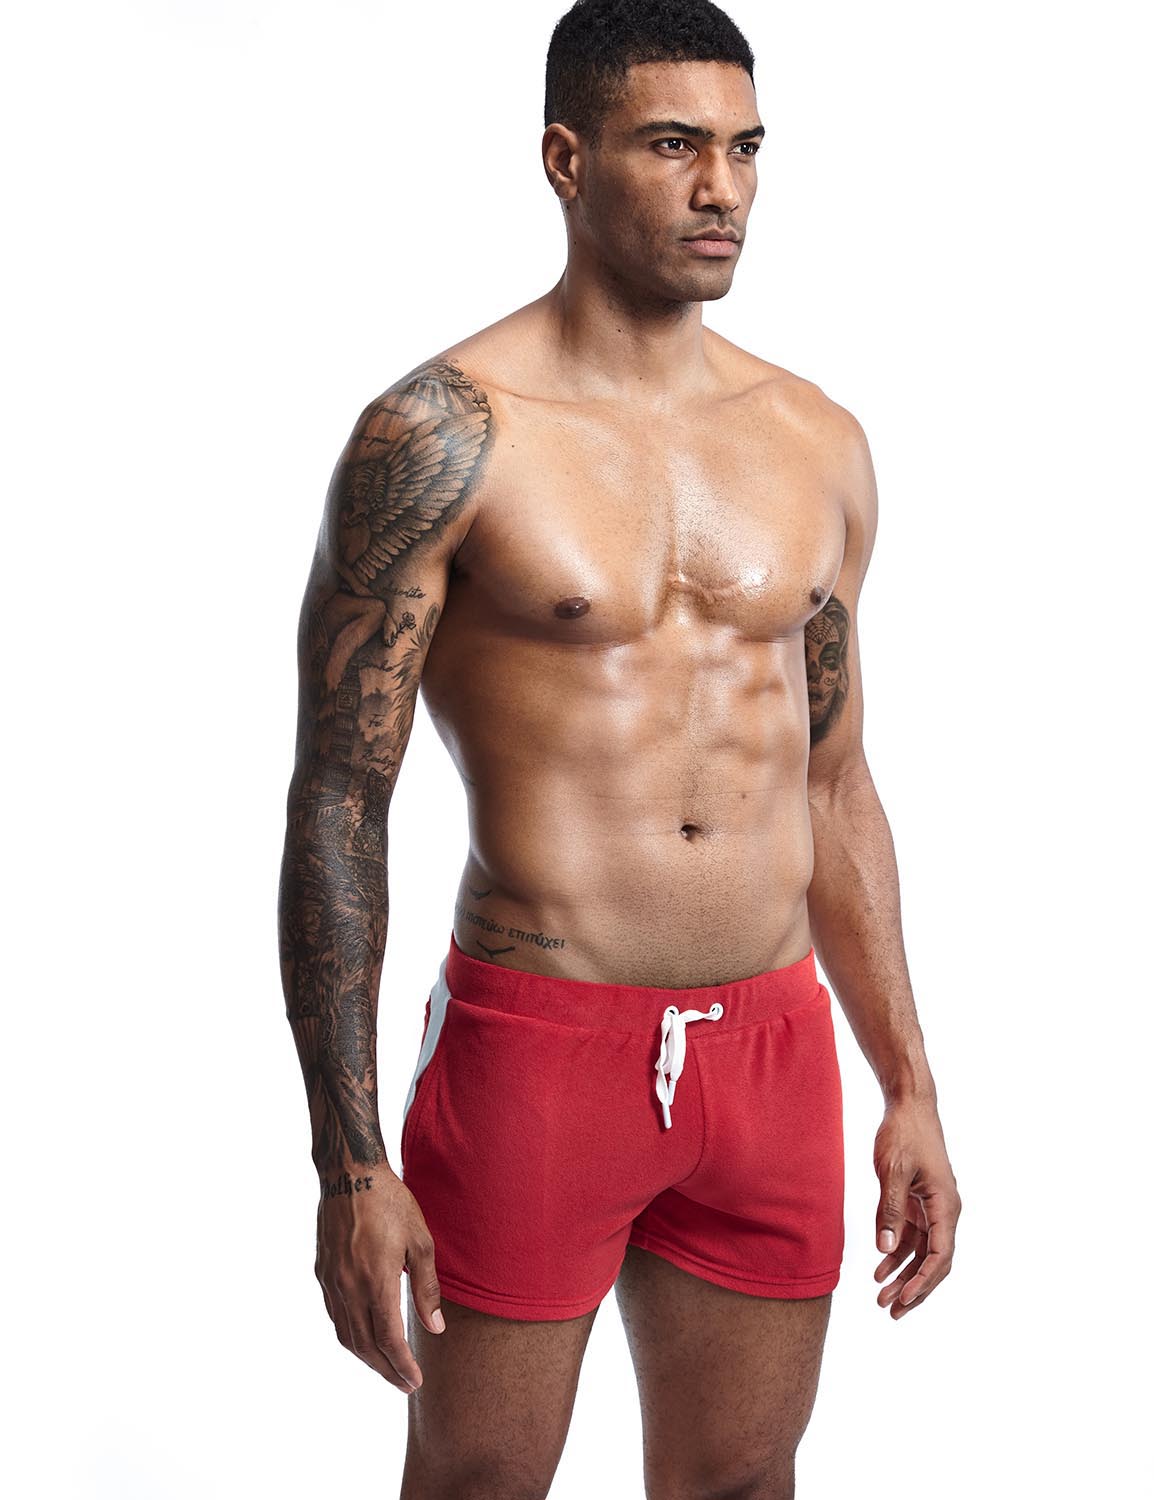 SEOBEAN Mens Low Rise Sexy Nano Trunks Boxer Brief Underwear 80207 –  SEOBEAN®